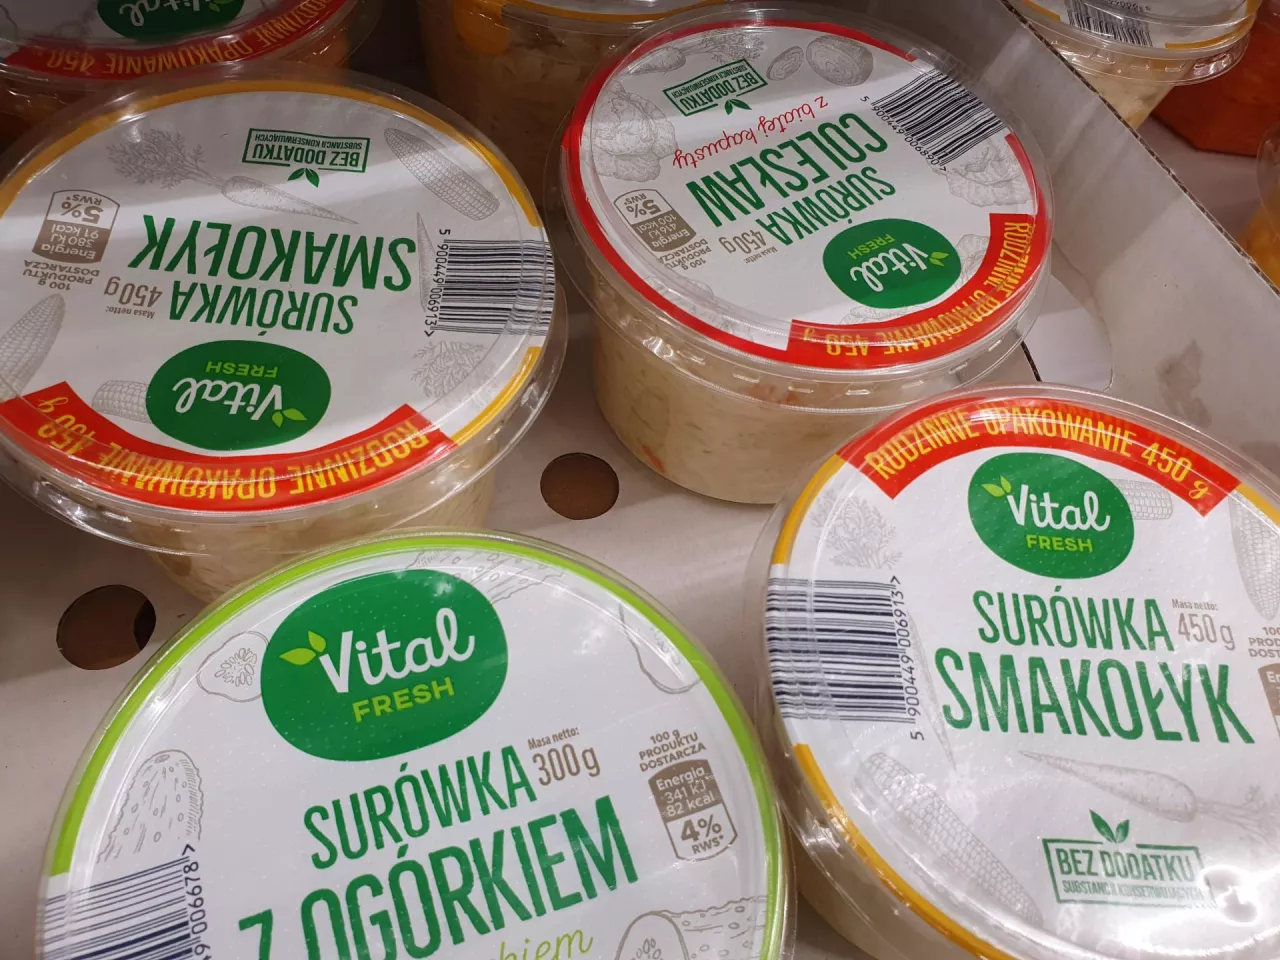 Na zdj. surówki marki własnej Biedronki produkowane przez Maga Foods (fot. wiadomoscihandlowe.pl)